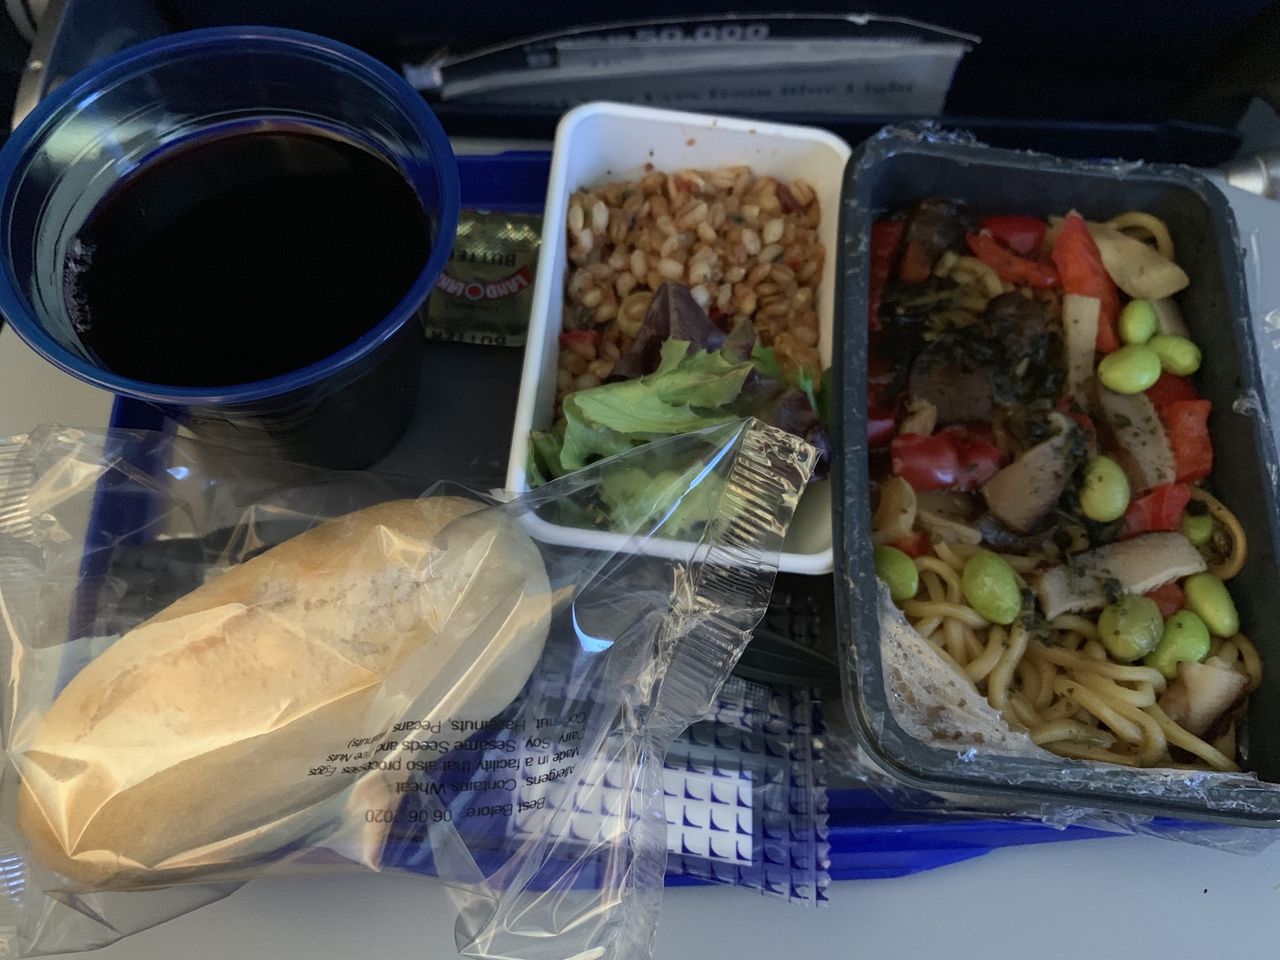 ユナイテッド航空サンフランシスコ発羽田行きエコノミークラス機内食 ワイン飲んだくれ日記